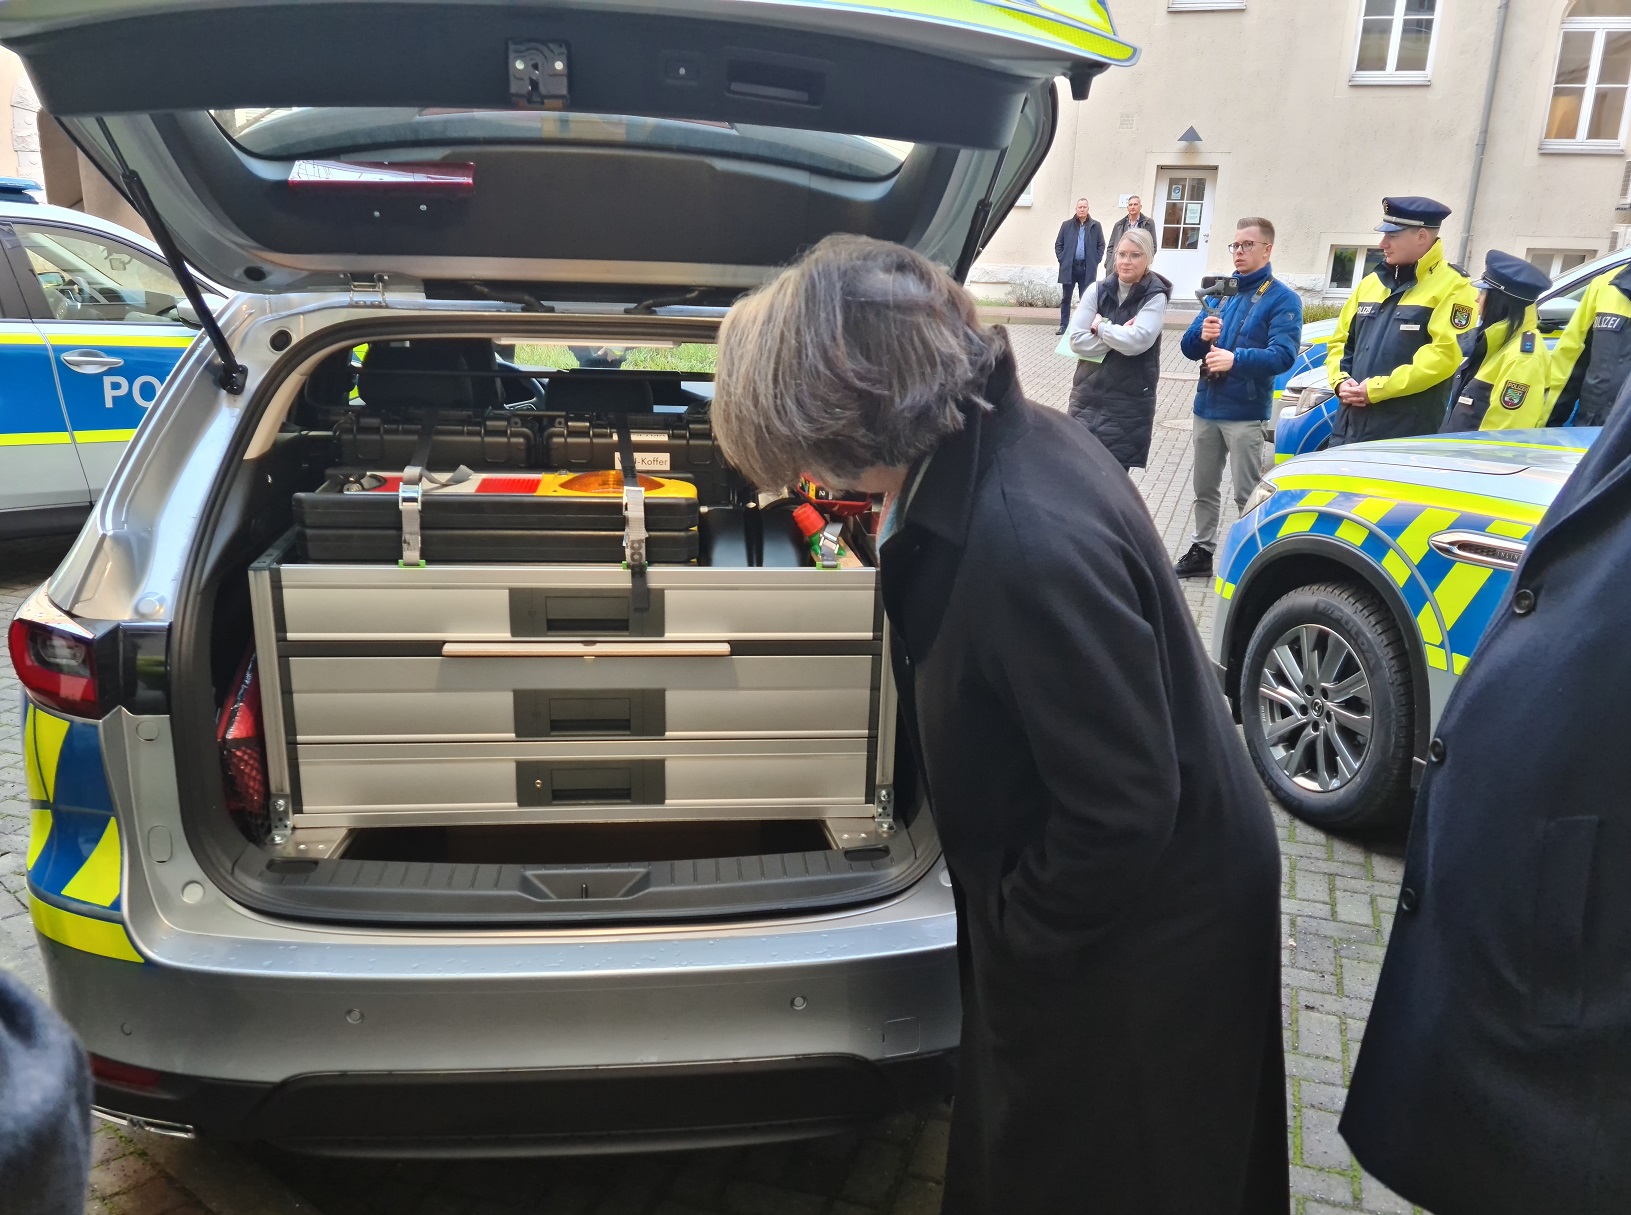 Die ausziehbaren Bott-Boxen unterstützen die geordnete und gesicherte Platzierung der polizeilichen Ausrüstung im Kofferraum dieses neuen Streifenwagens.